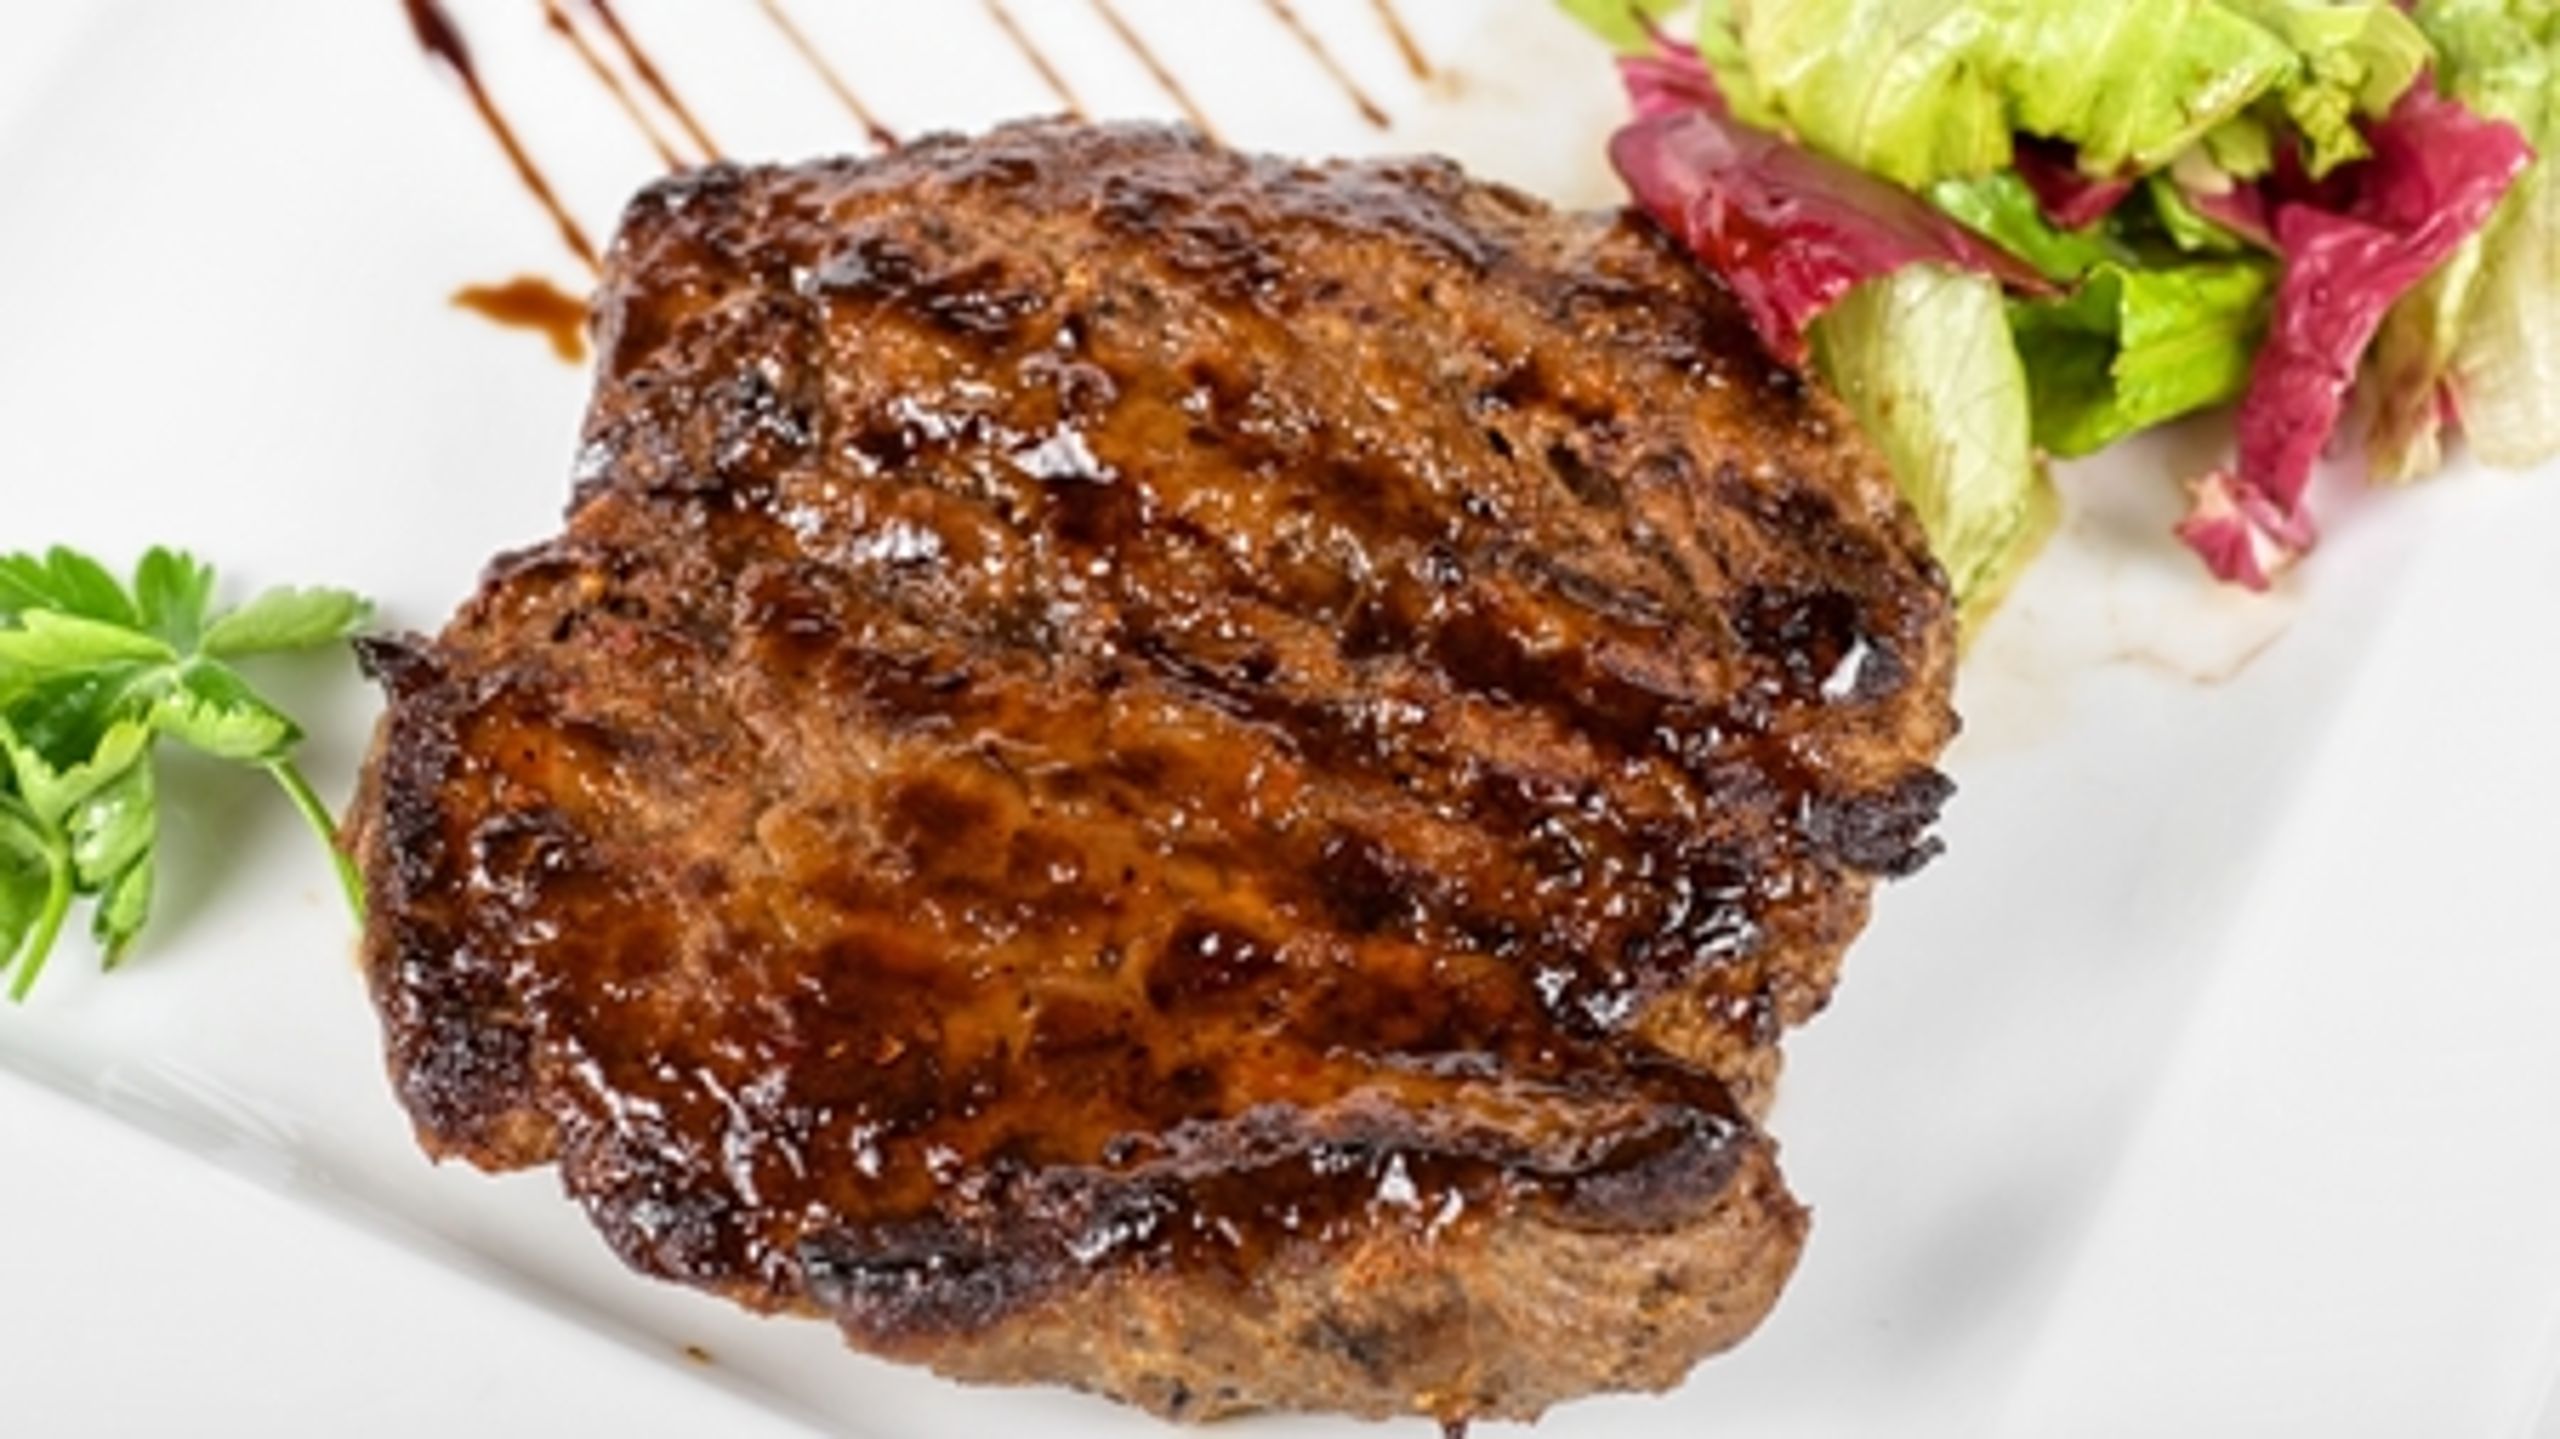 Ifølge de nye kostråd bør danskerne maksimalt spise 500 gram rødt kød om ugen. 